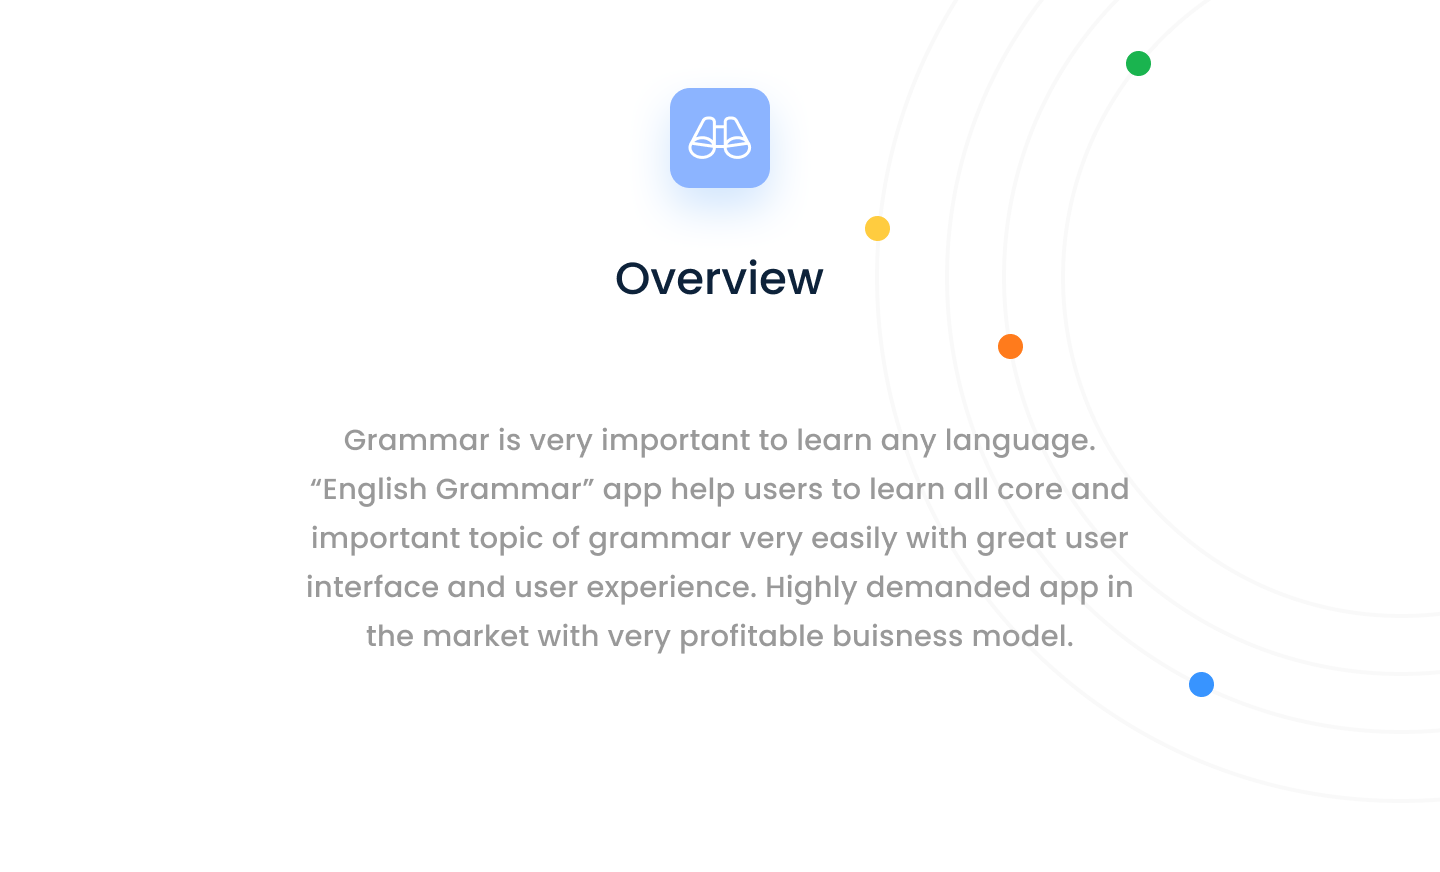 Engrammar - English Grammar Learning app with Admob ads - 2